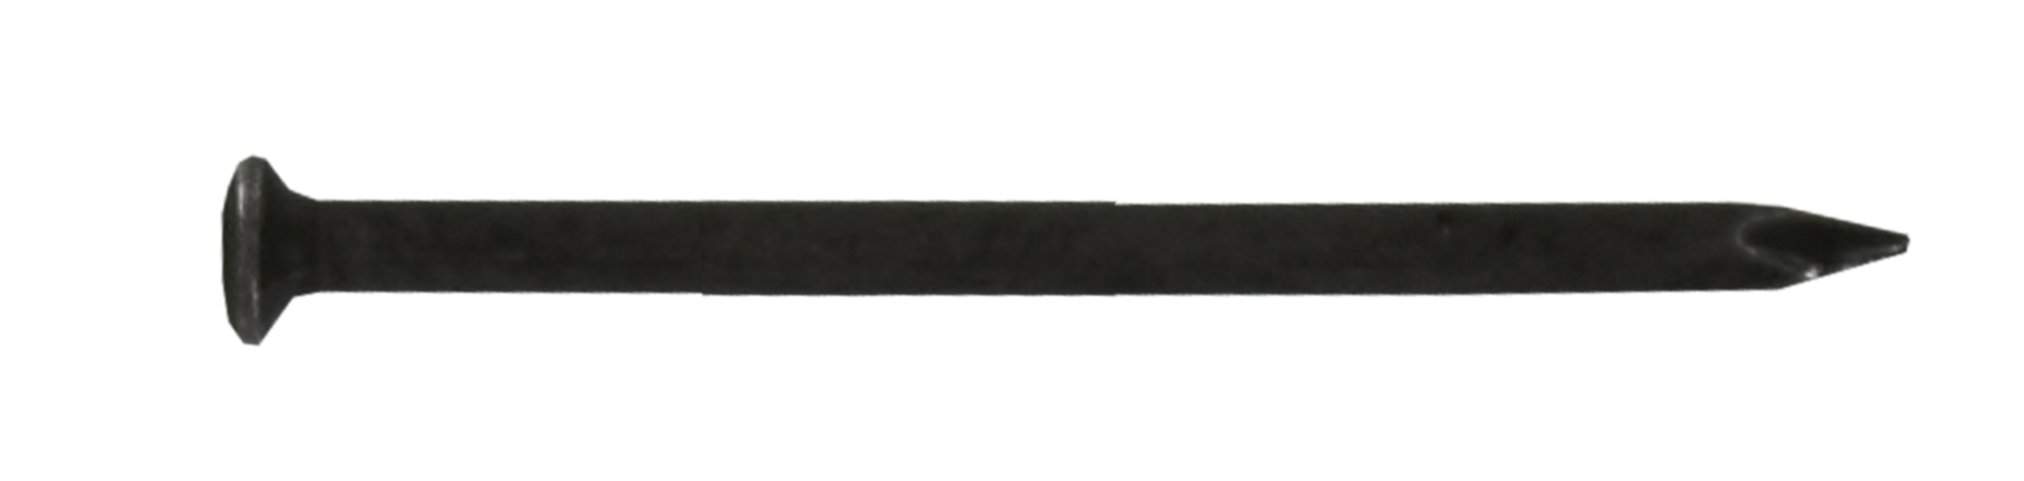 Rundkopfspitze gehärteter Stahl 2x25mm, Beutel mit 80<span class='notranslate' data-dgexclude>Gramm</span>.